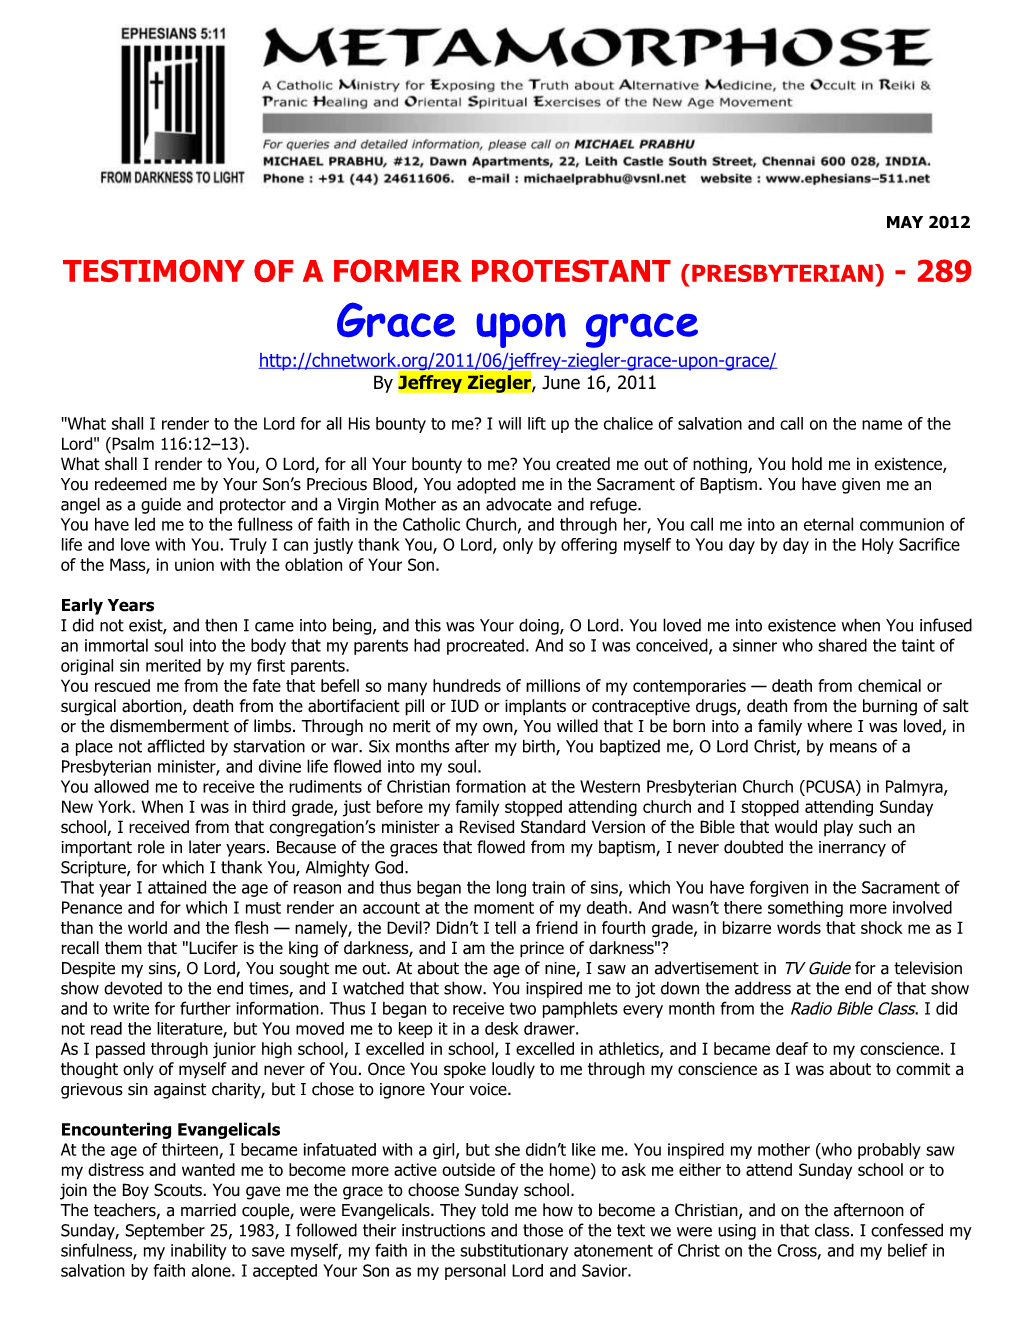 Testimony of a Former Protestant (Presbyterian) - 289